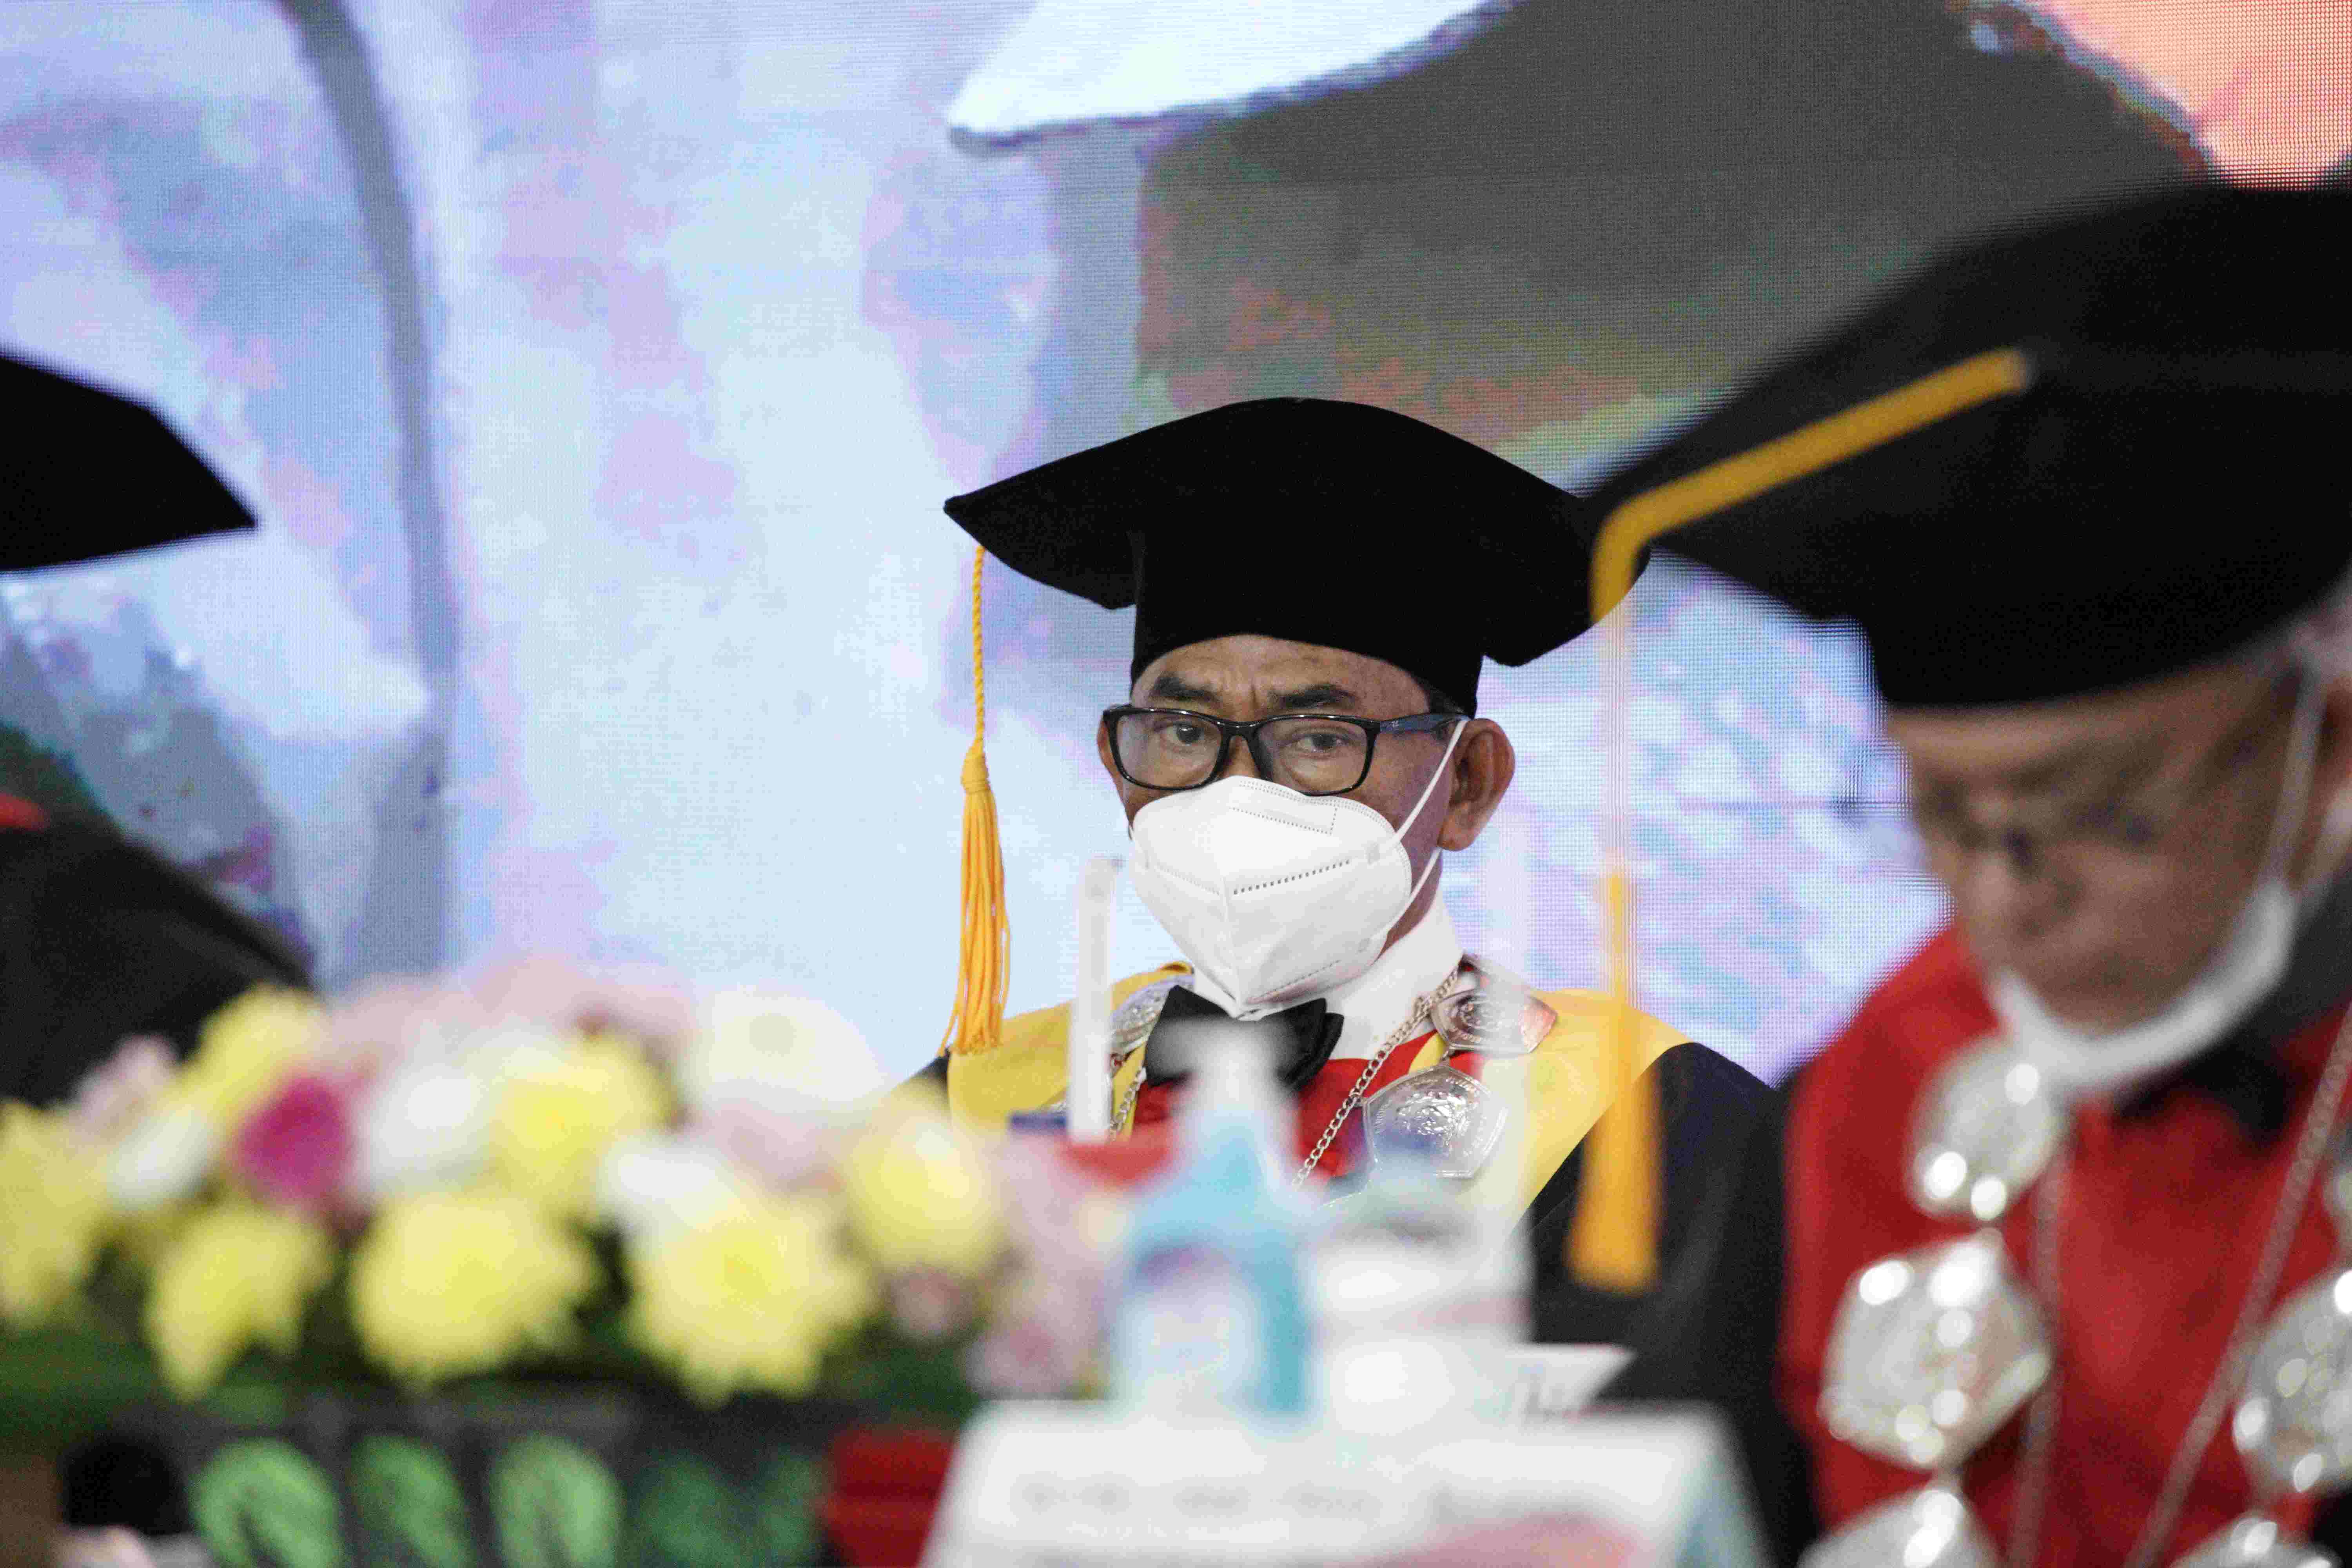 Pengukuhan Prof Dr Wicipto Setiadi SH MH Guru Besar bidang Ilmu Hukum Fakultas Hukum Universitas Pembangunan Nasional Veteran Jakarta (244)